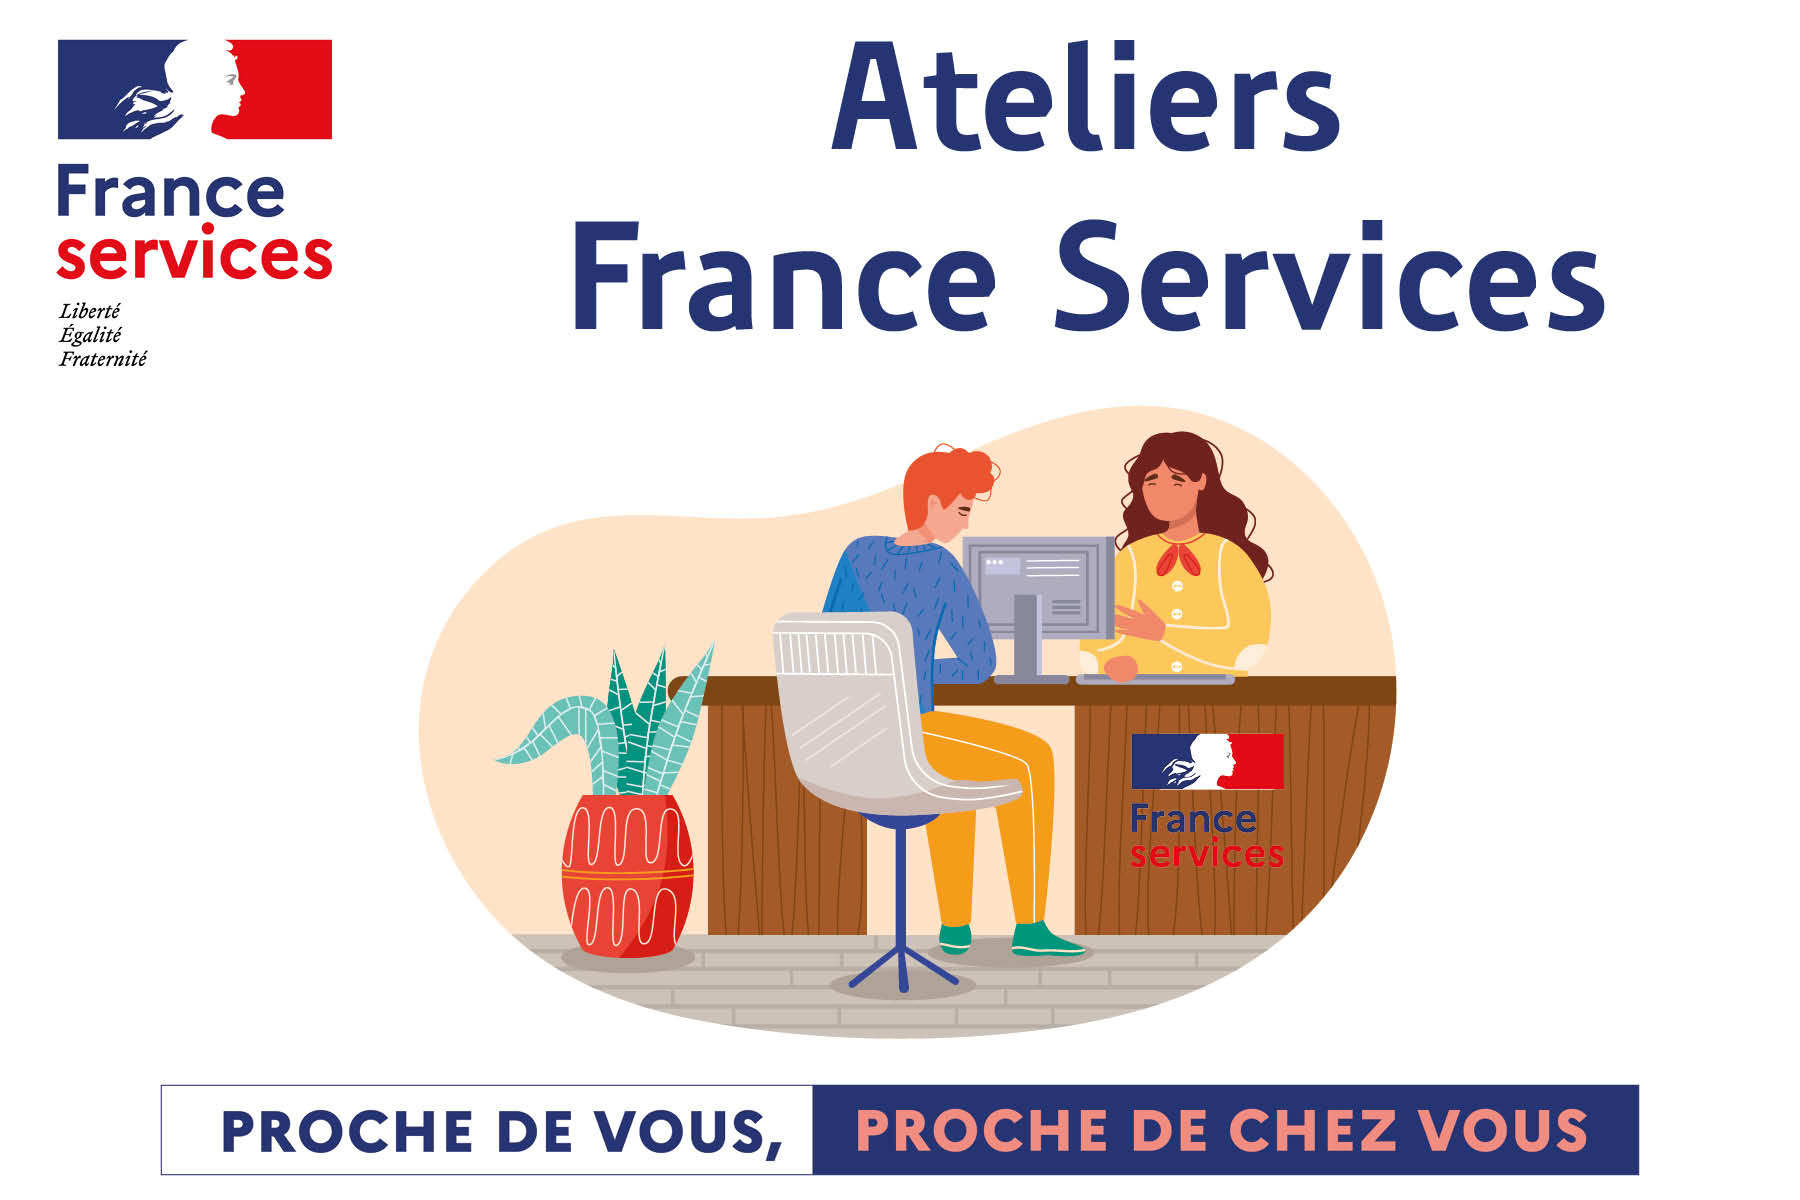 Lire la suite à propos de l’article Ateliers France Services